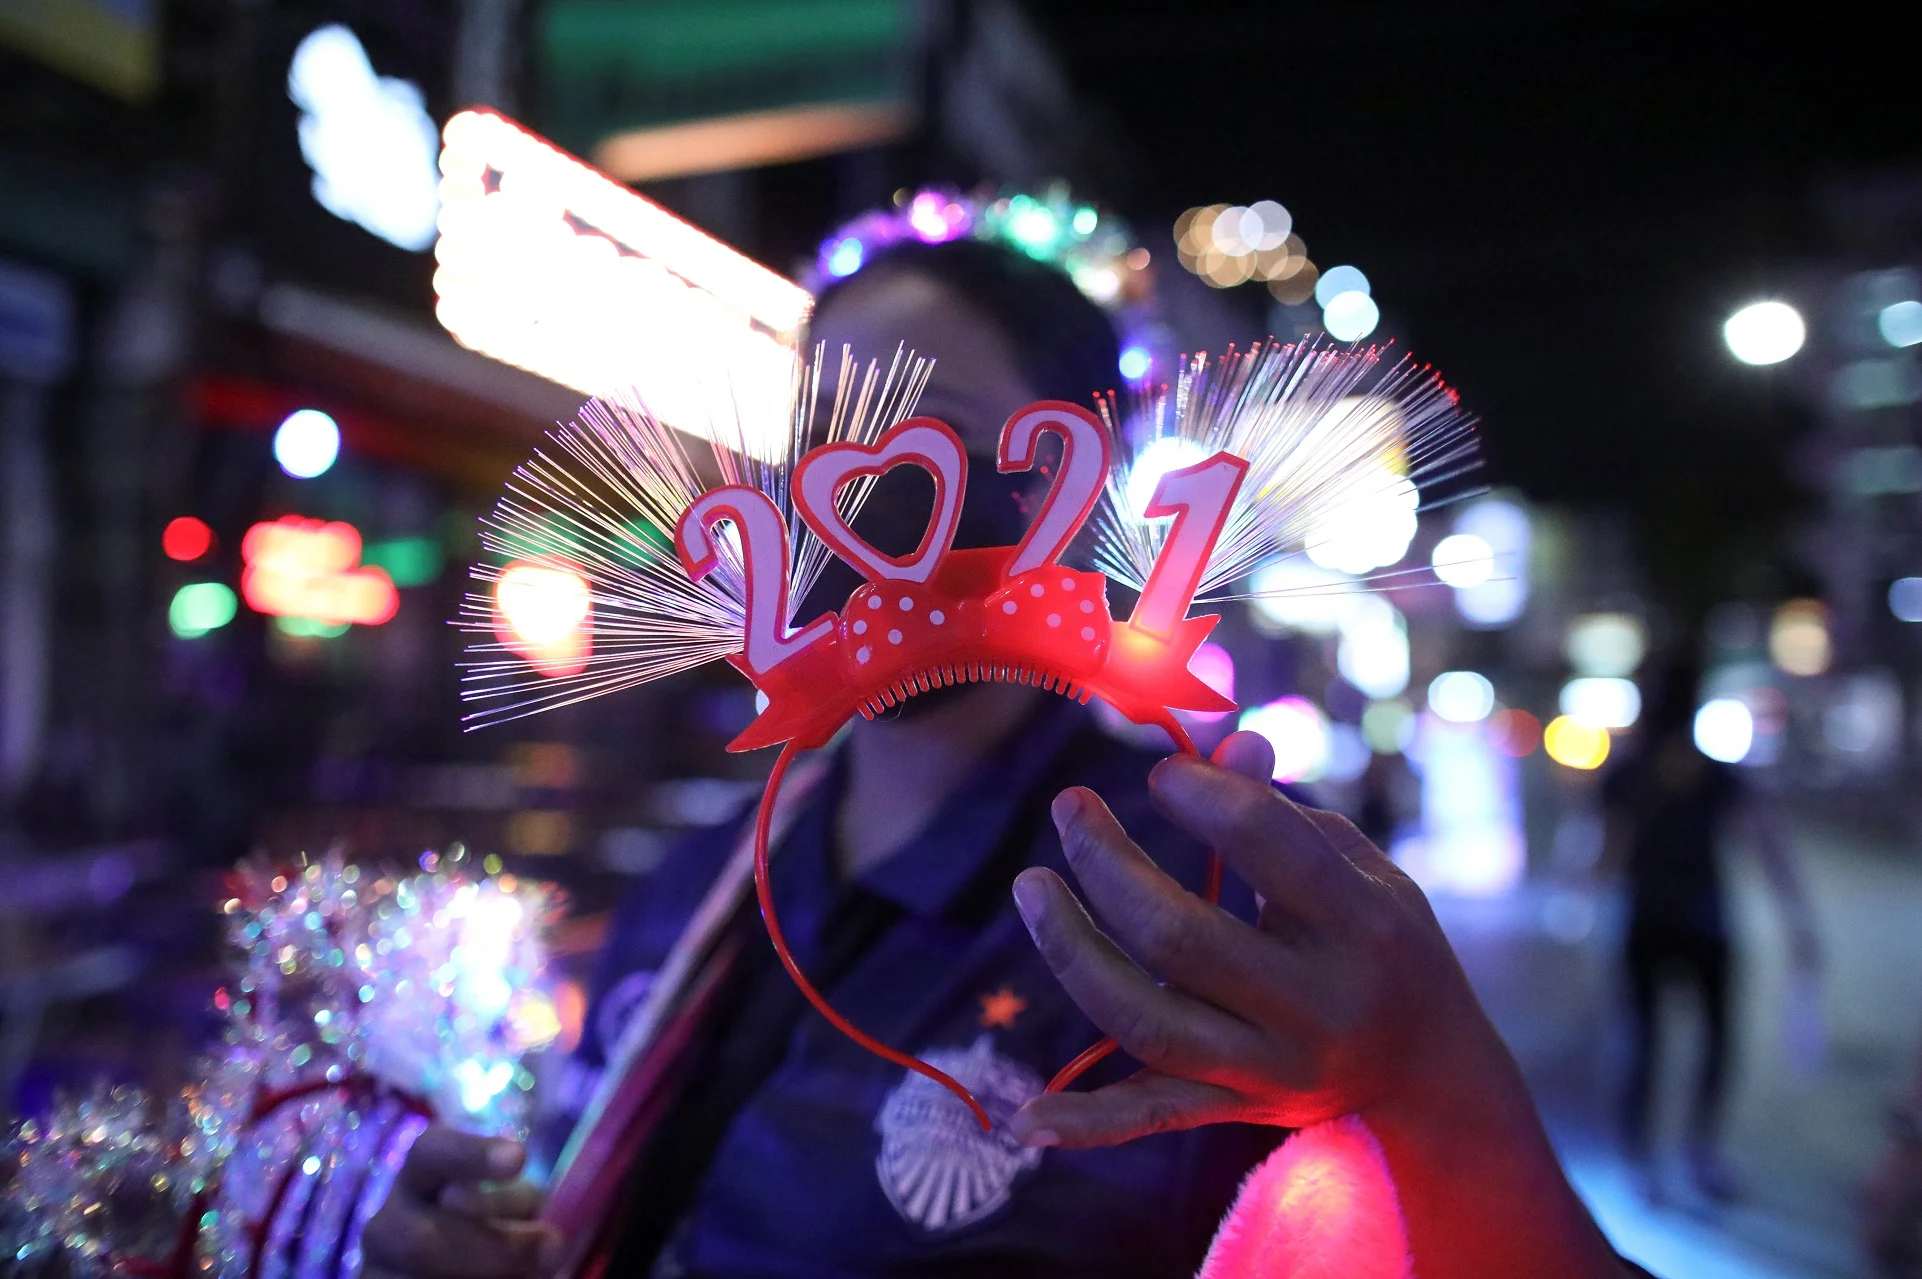 בבנגקוק, בירת תאילנד, נערכים לשנה החדשה